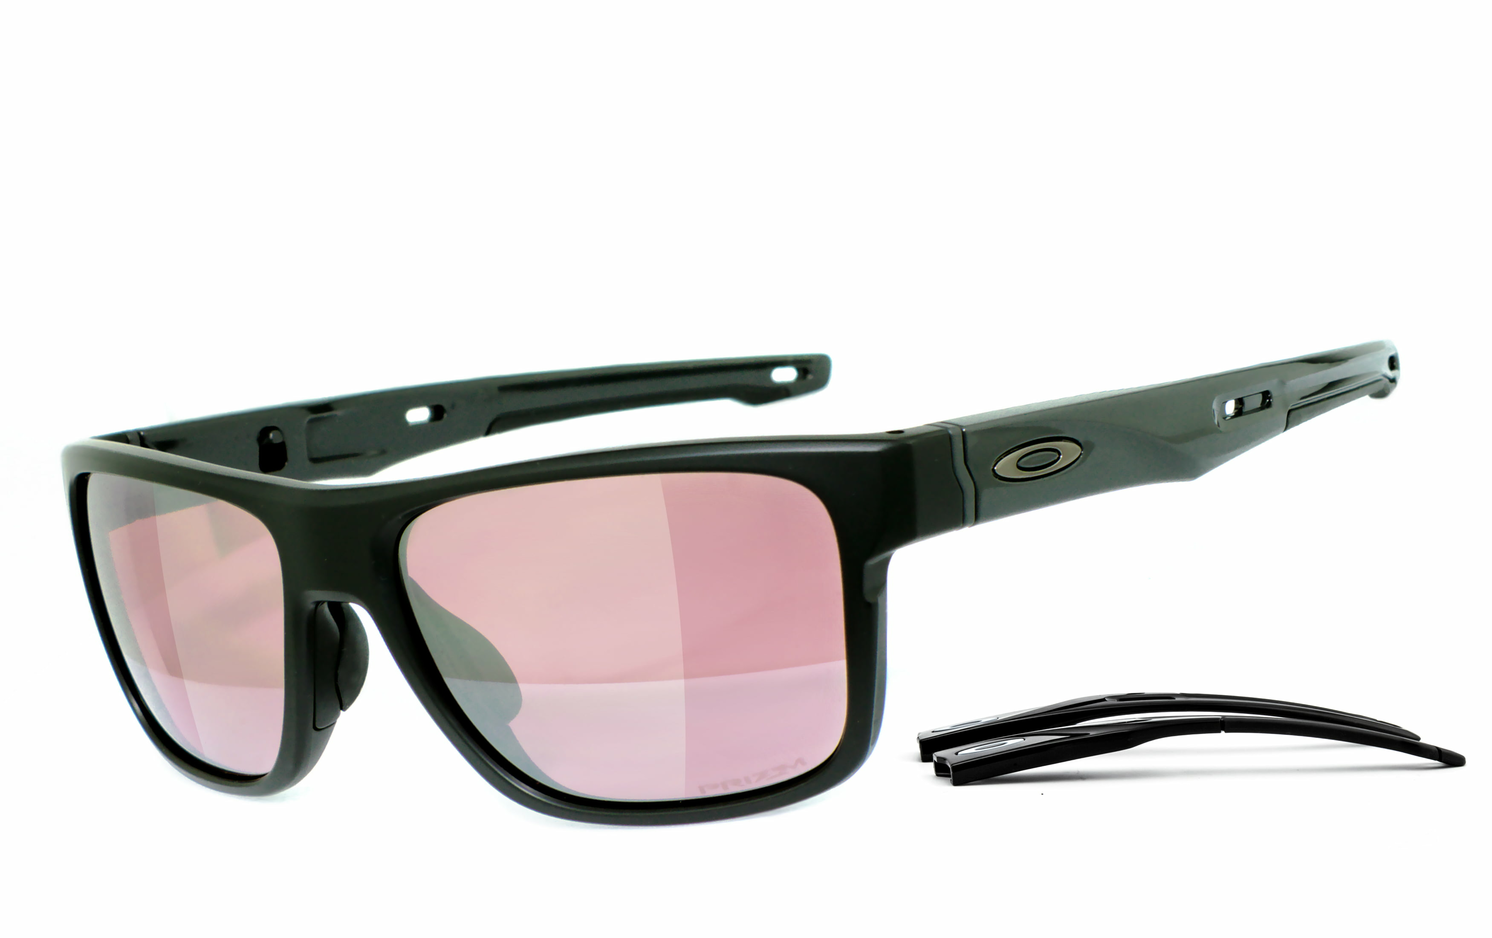 OAKLEY | Crossrange - OO9361  Sportbrille, Fahrradbrille, Sonnenbrille, Bikerbrille, Radbrille, UV400 Schutzfilter